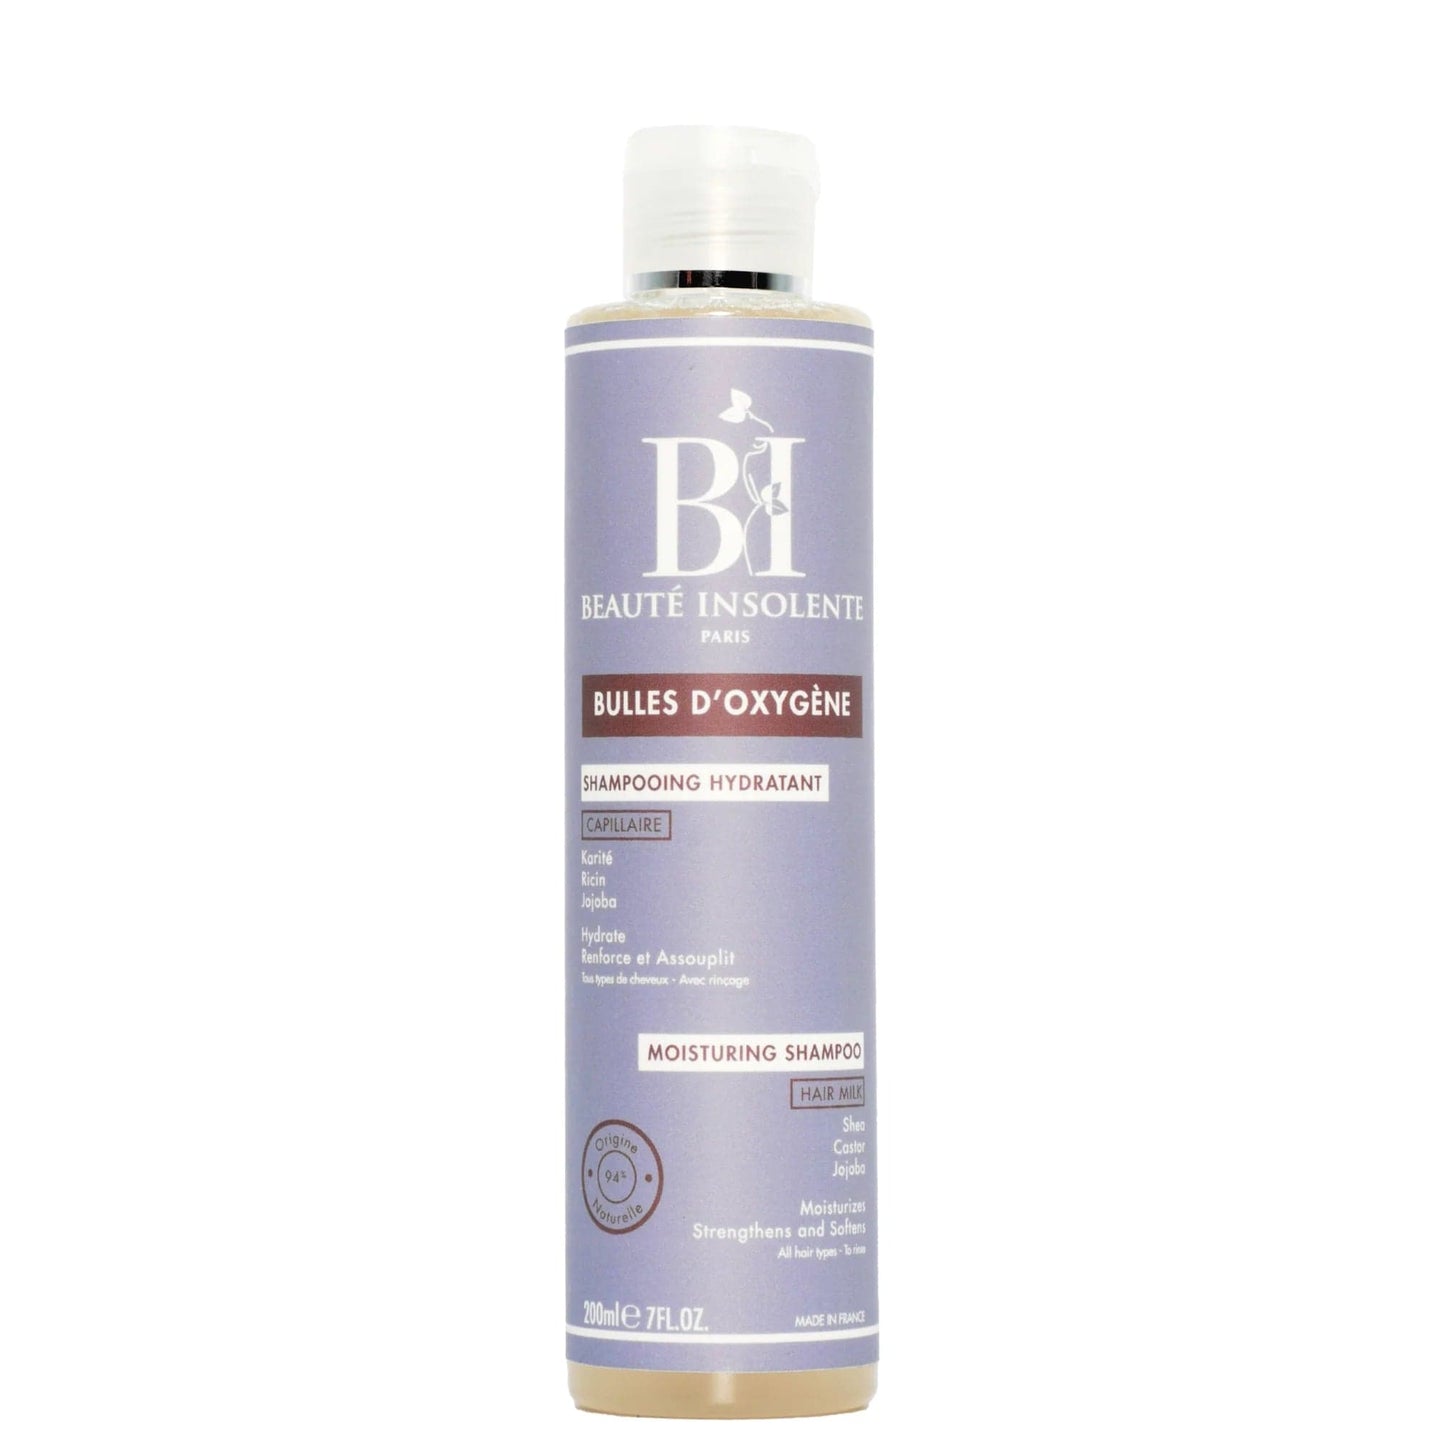 Beauté Insolente - “Oxygen Bubbles” moisturizing shampoo - 200ml - Beaute Insolente - Ethni Beauty Market